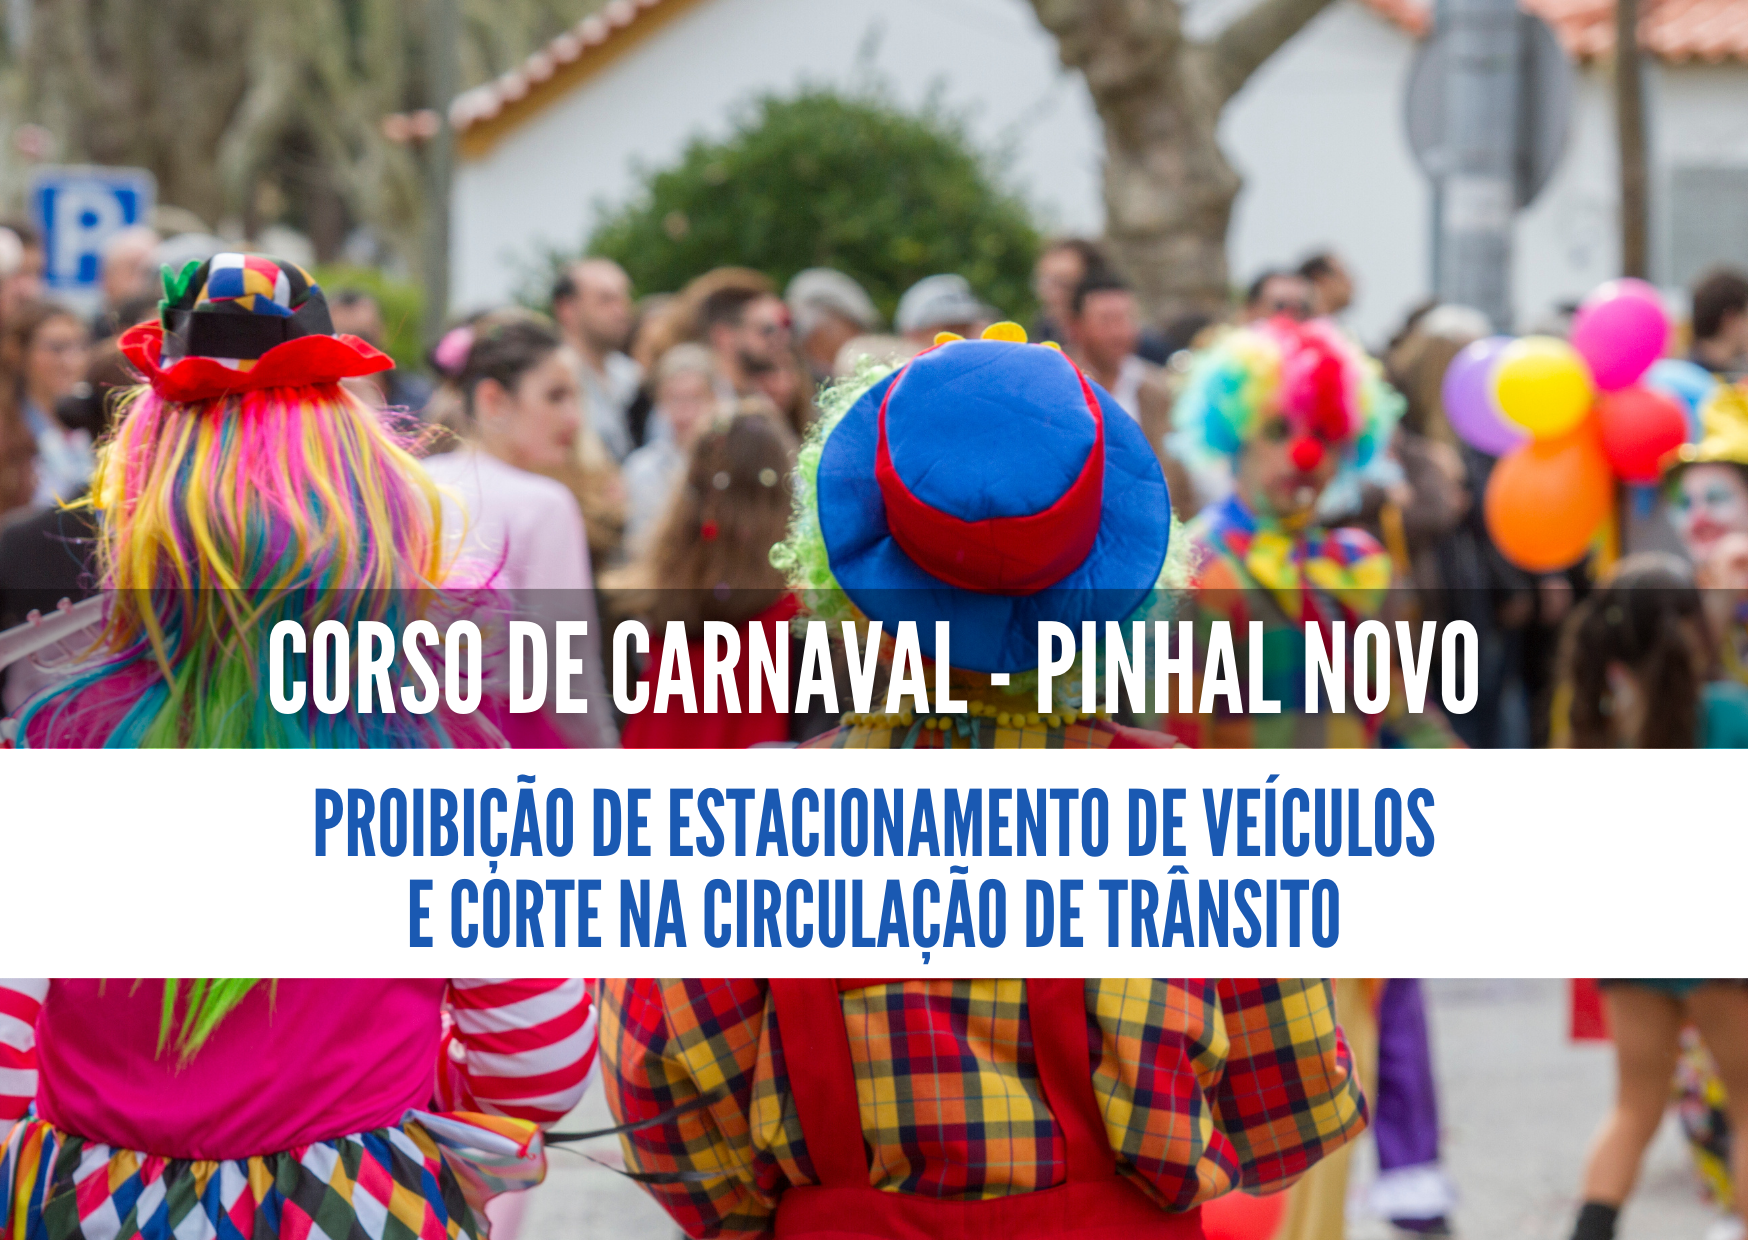 Corso de Carnaval - trânsito condicionado em Pinhal Novo a 13 fevereiro